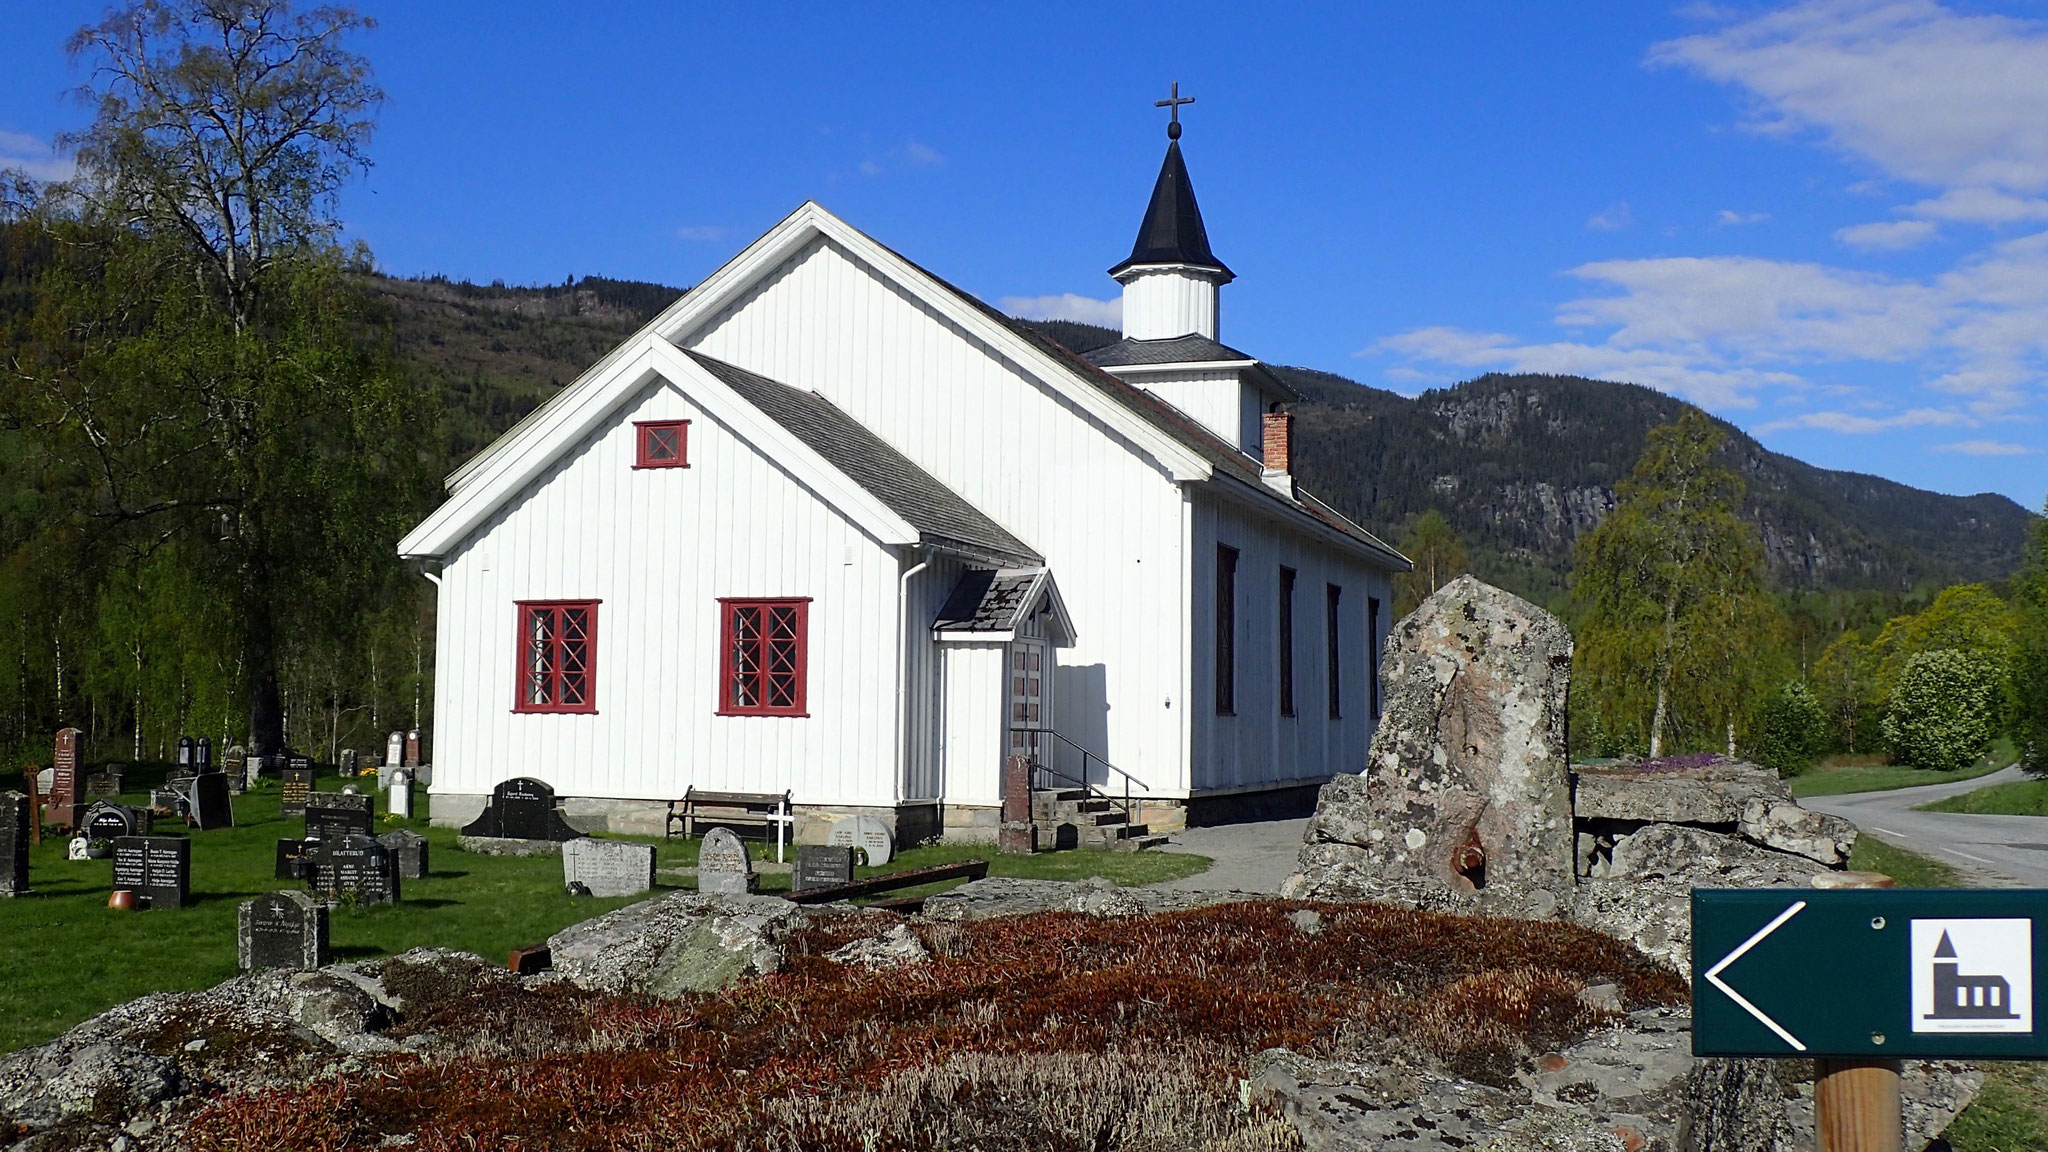 Atrå Kirche